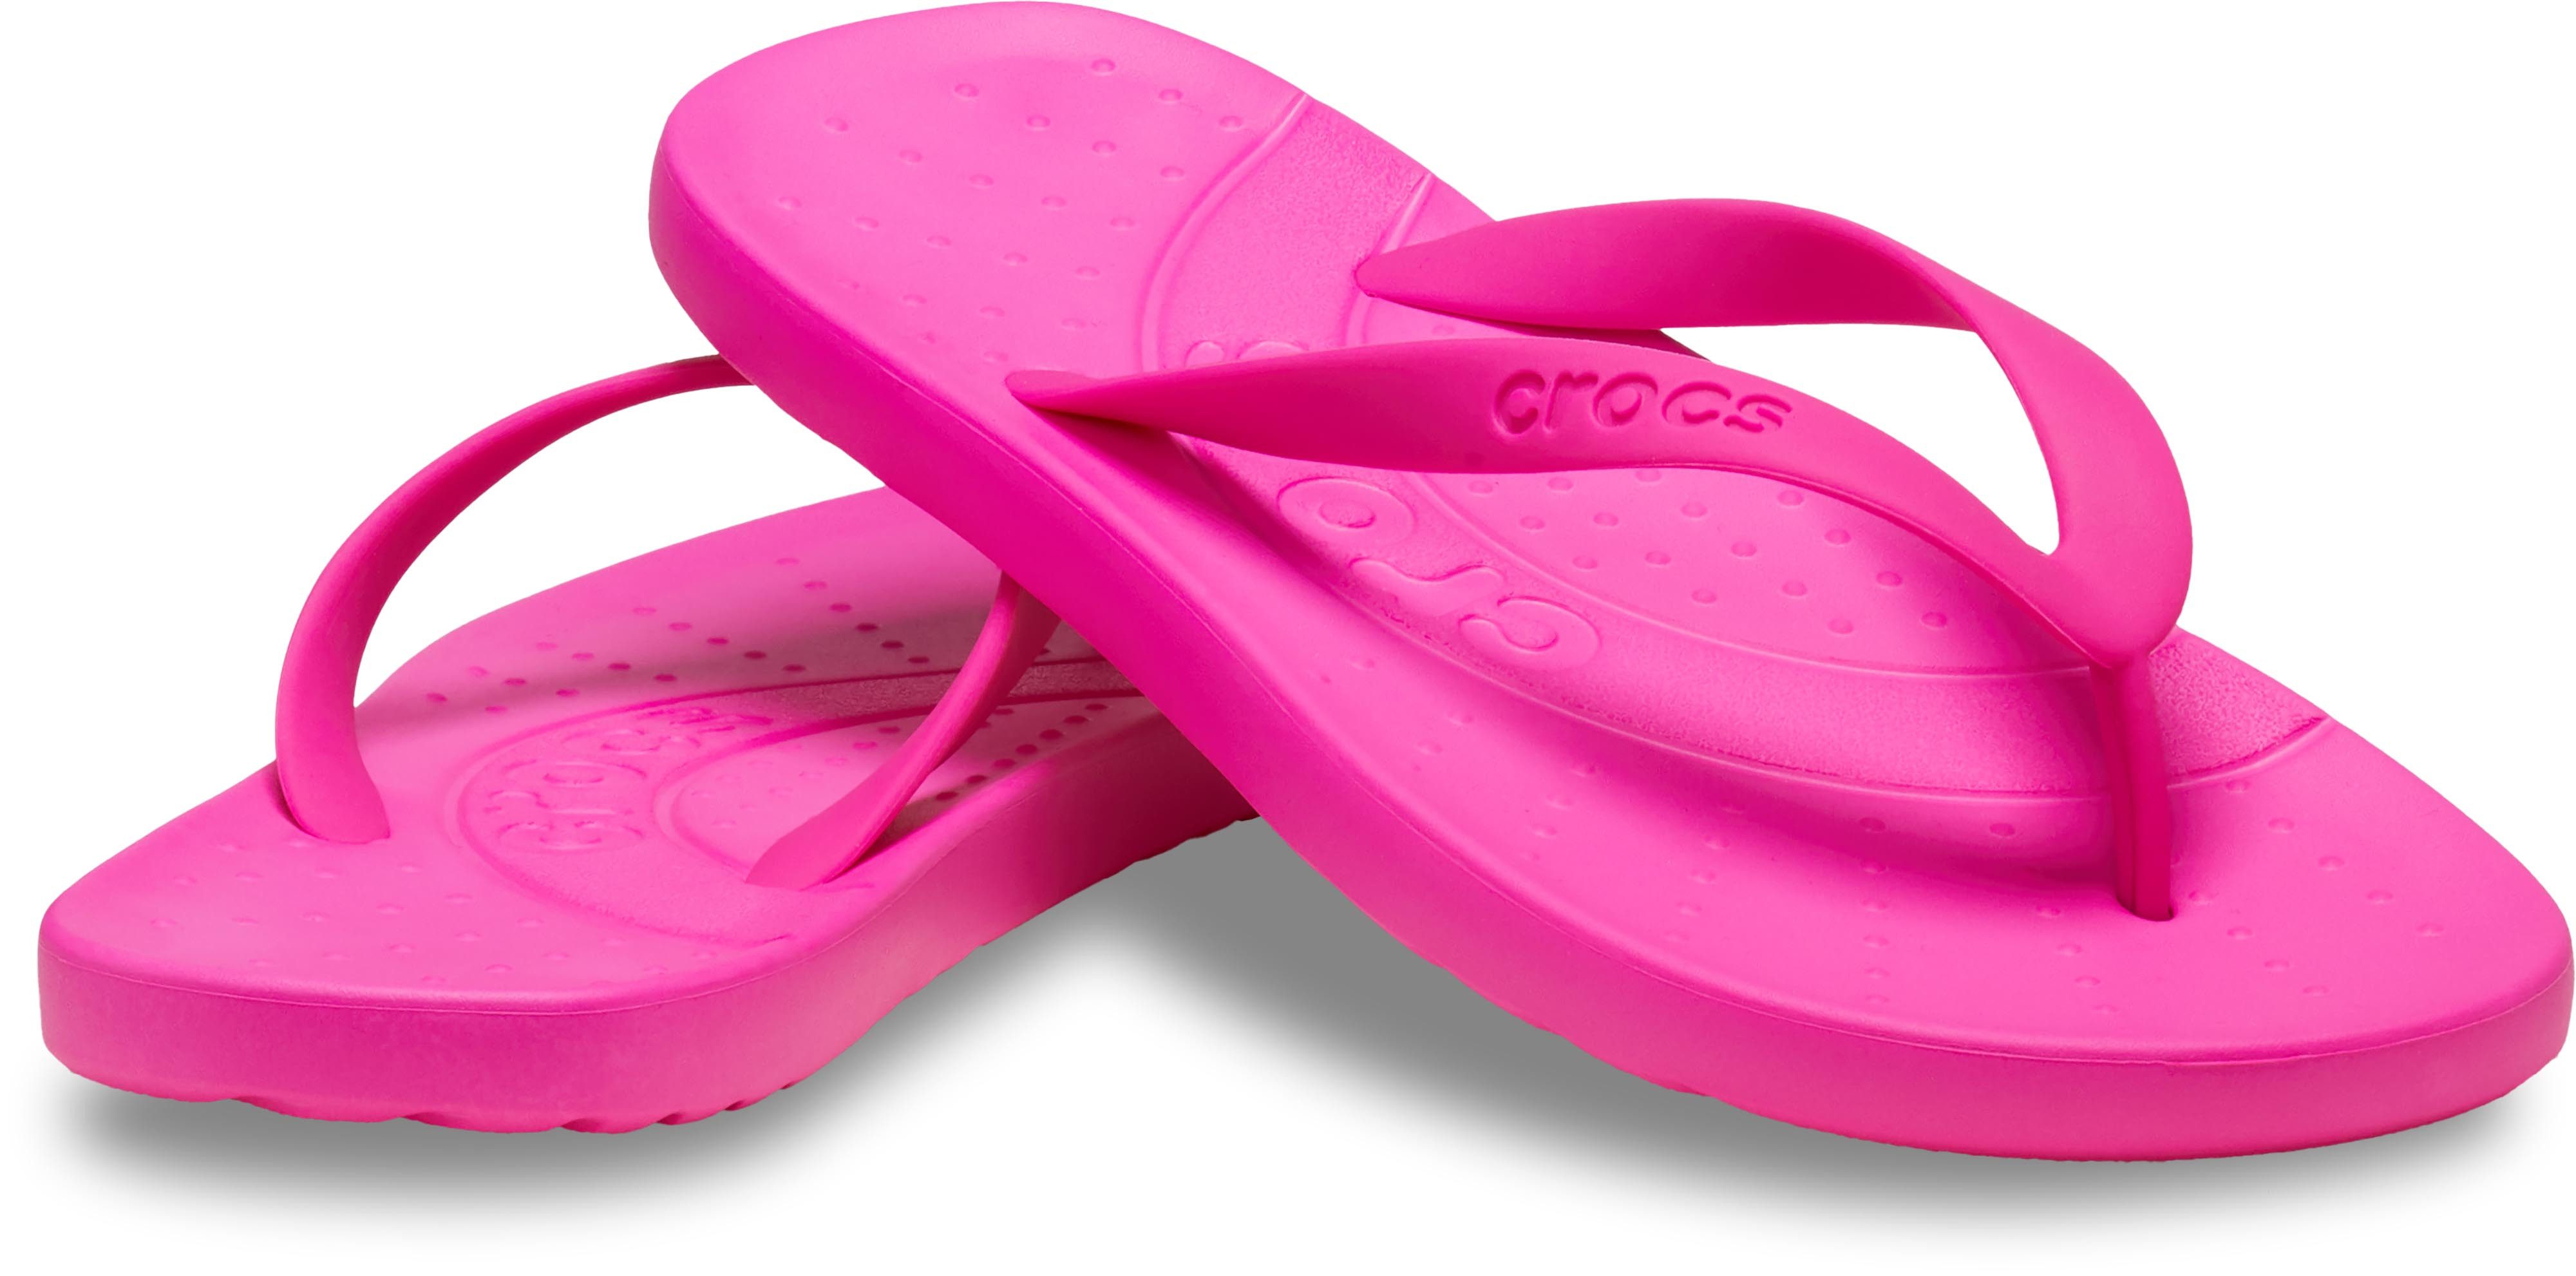 Crocs Crocs Flip Zehentrenner Badeschuh, Sandale, Sommerschuh mit weichem Zehensteg